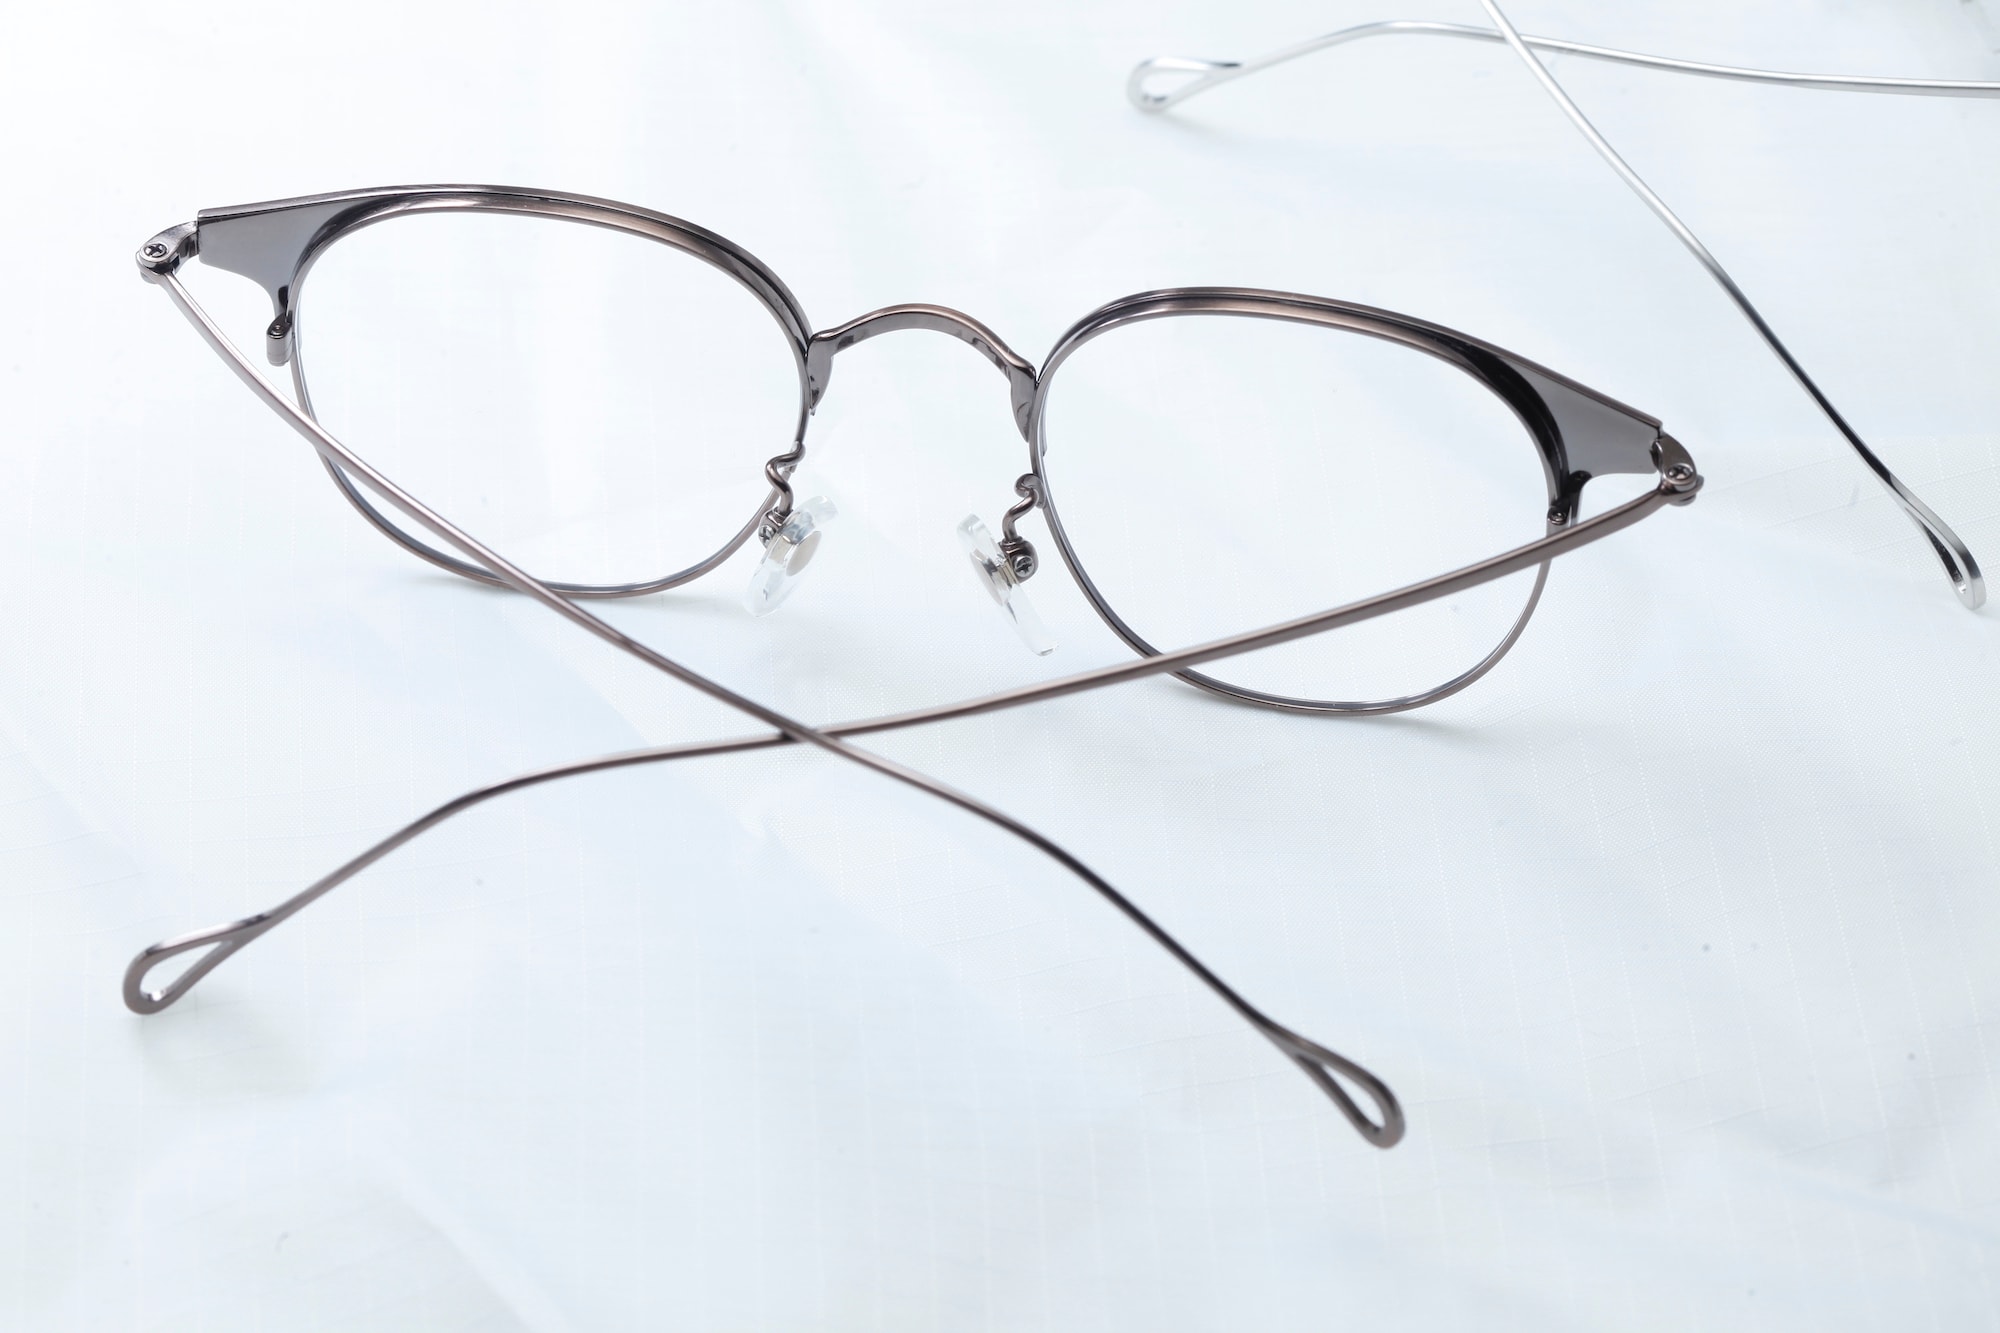 復古眼鏡品牌 UNITED VINTAGE 推出鈦金屬眼鏡新作